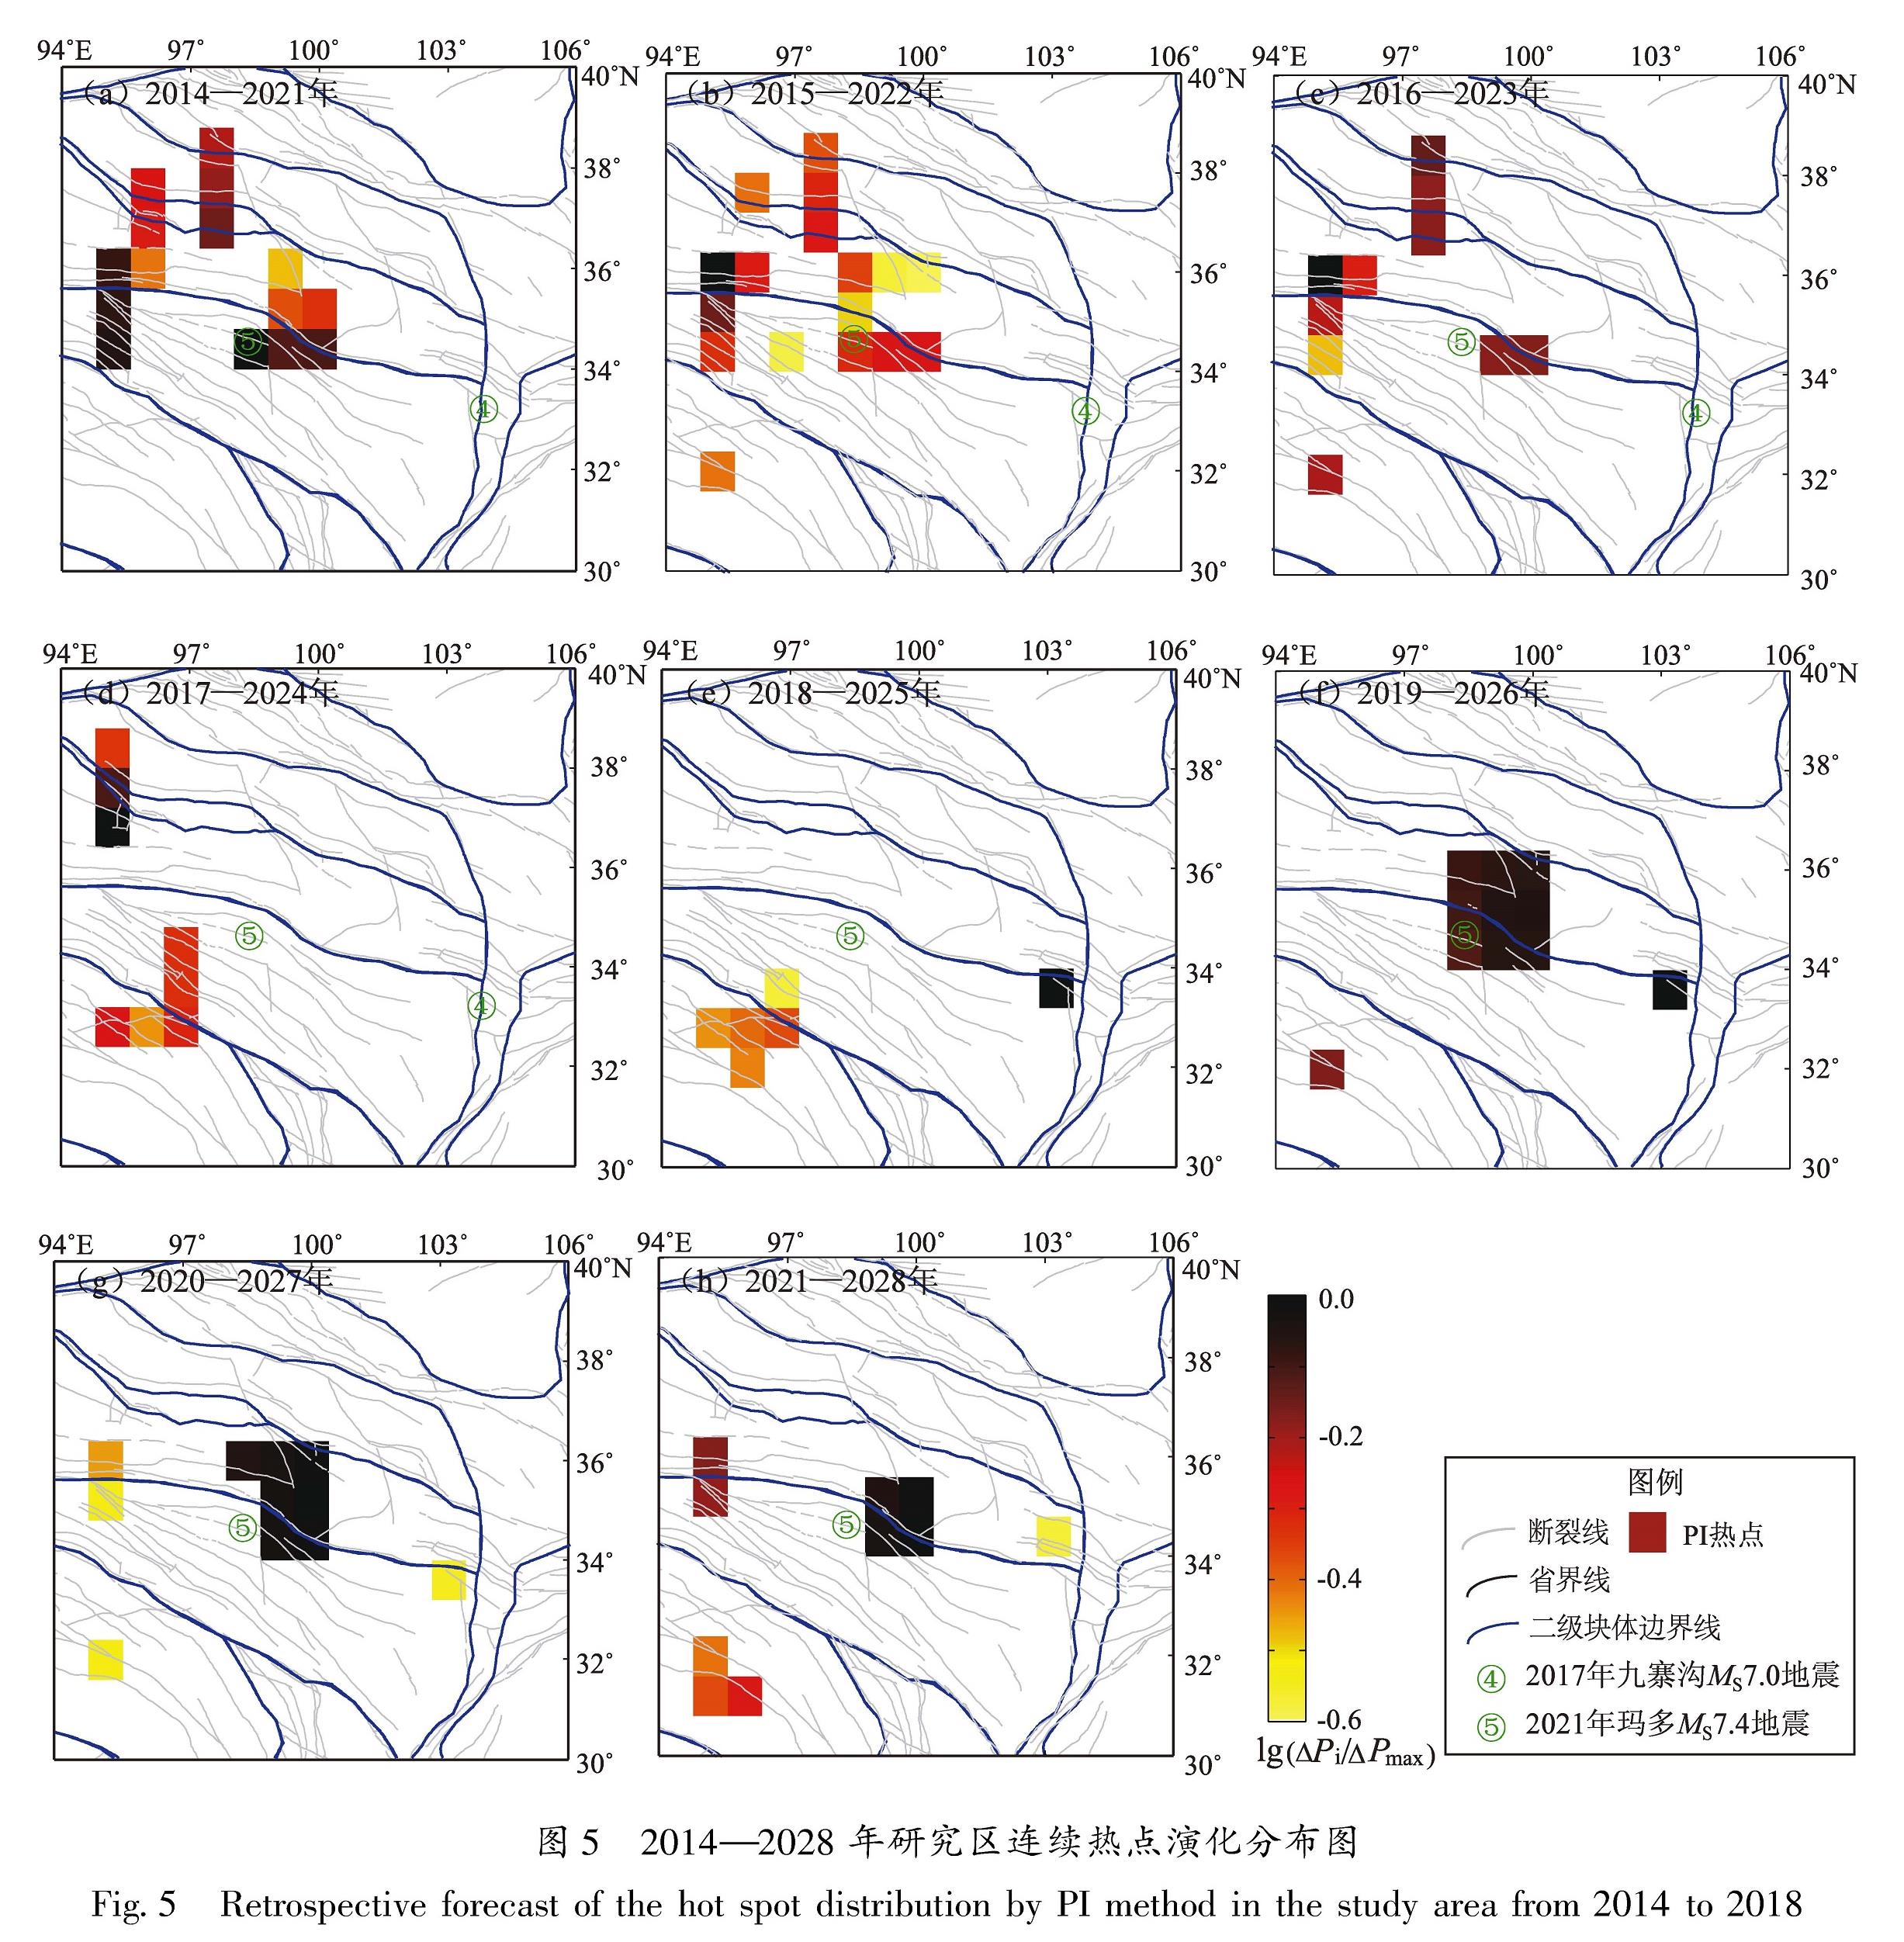 图5 2014—2028年研究区连续热点演化分布图<br/>Fig.5 Retrospective forecast of the hot spot distribution by PI method in the study area from 2014 to 2018